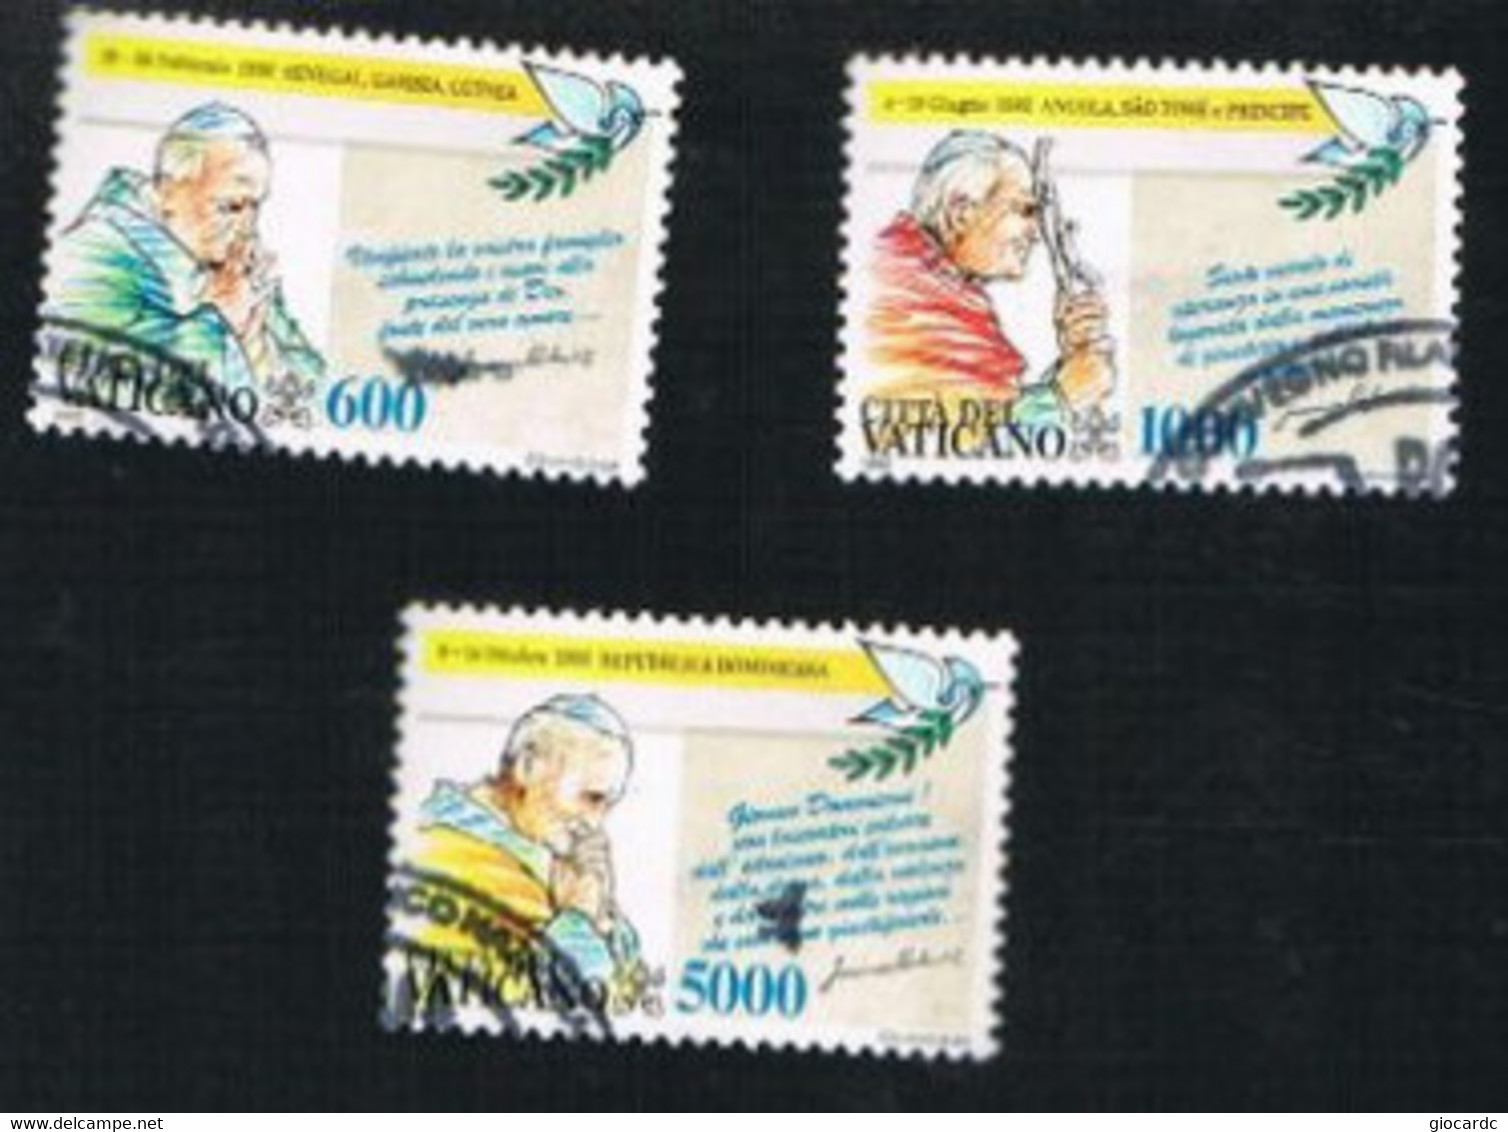 VATICANO - UNIF. 978.980 - 1993  I VIAGGI DI GIOVANNI PAOLO II NEL 1992     -  USED° - Used Stamps